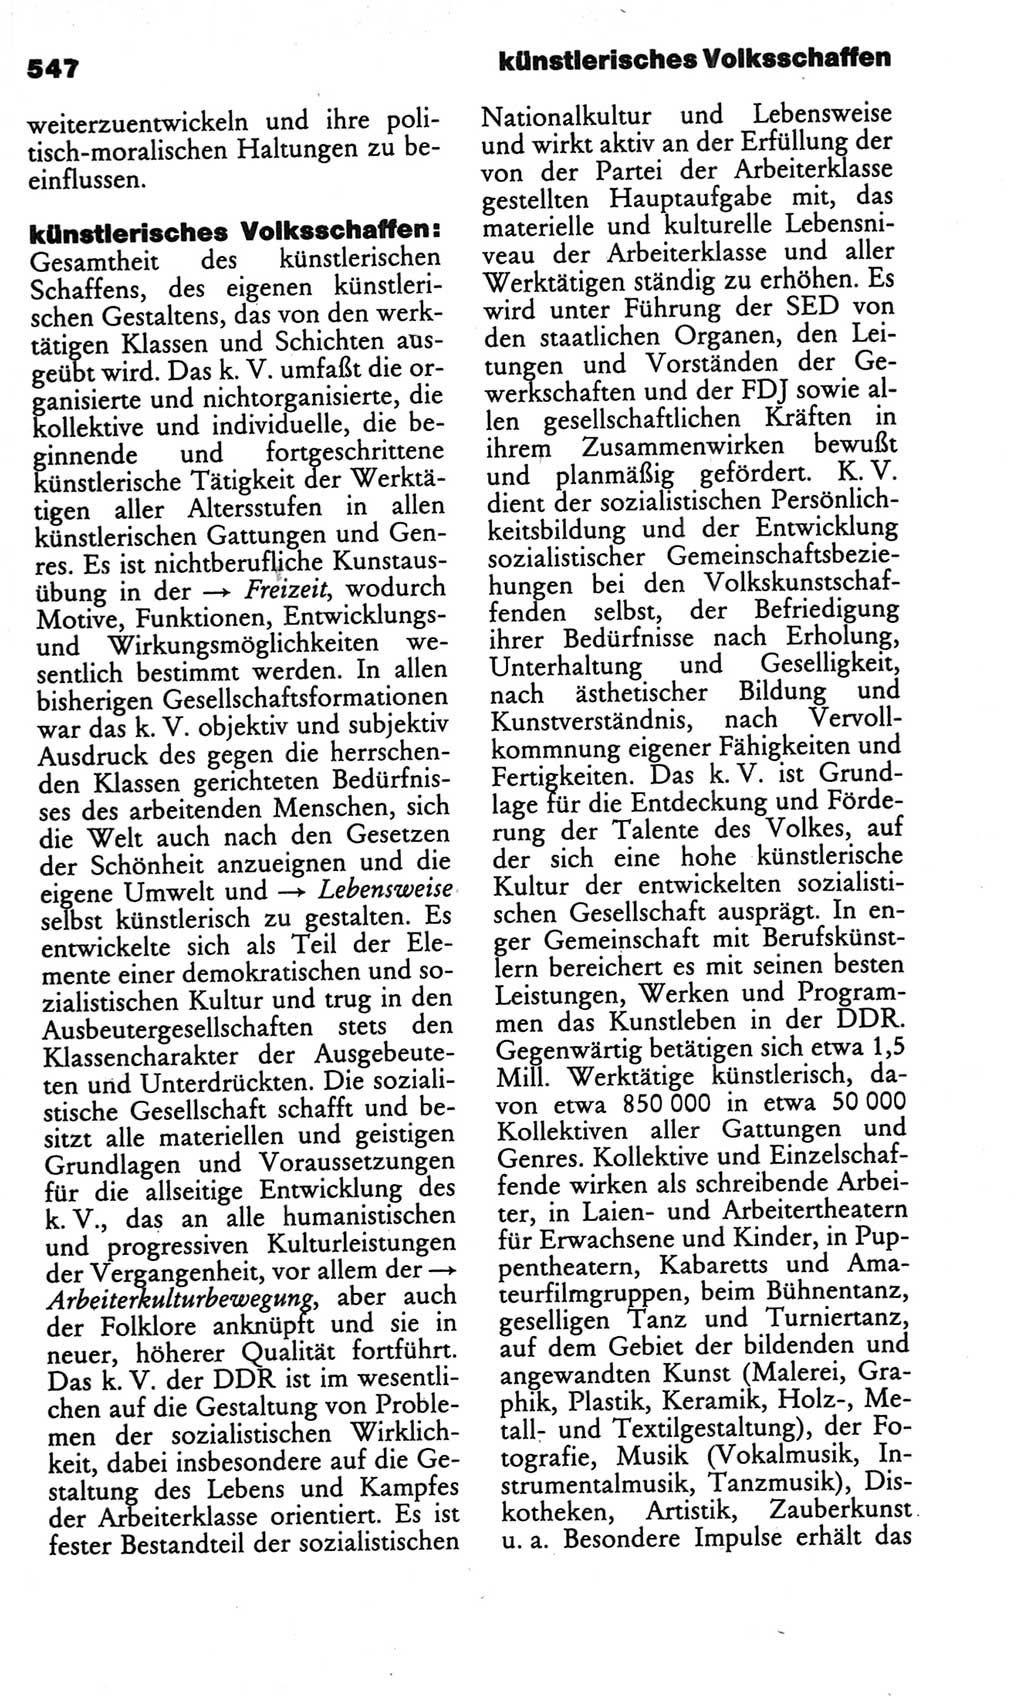 Kleines politisches Wörterbuch [Deutsche Demokratische Republik (DDR)] 1986, Seite 547 (Kl. pol. Wb. DDR 1986, S. 547)